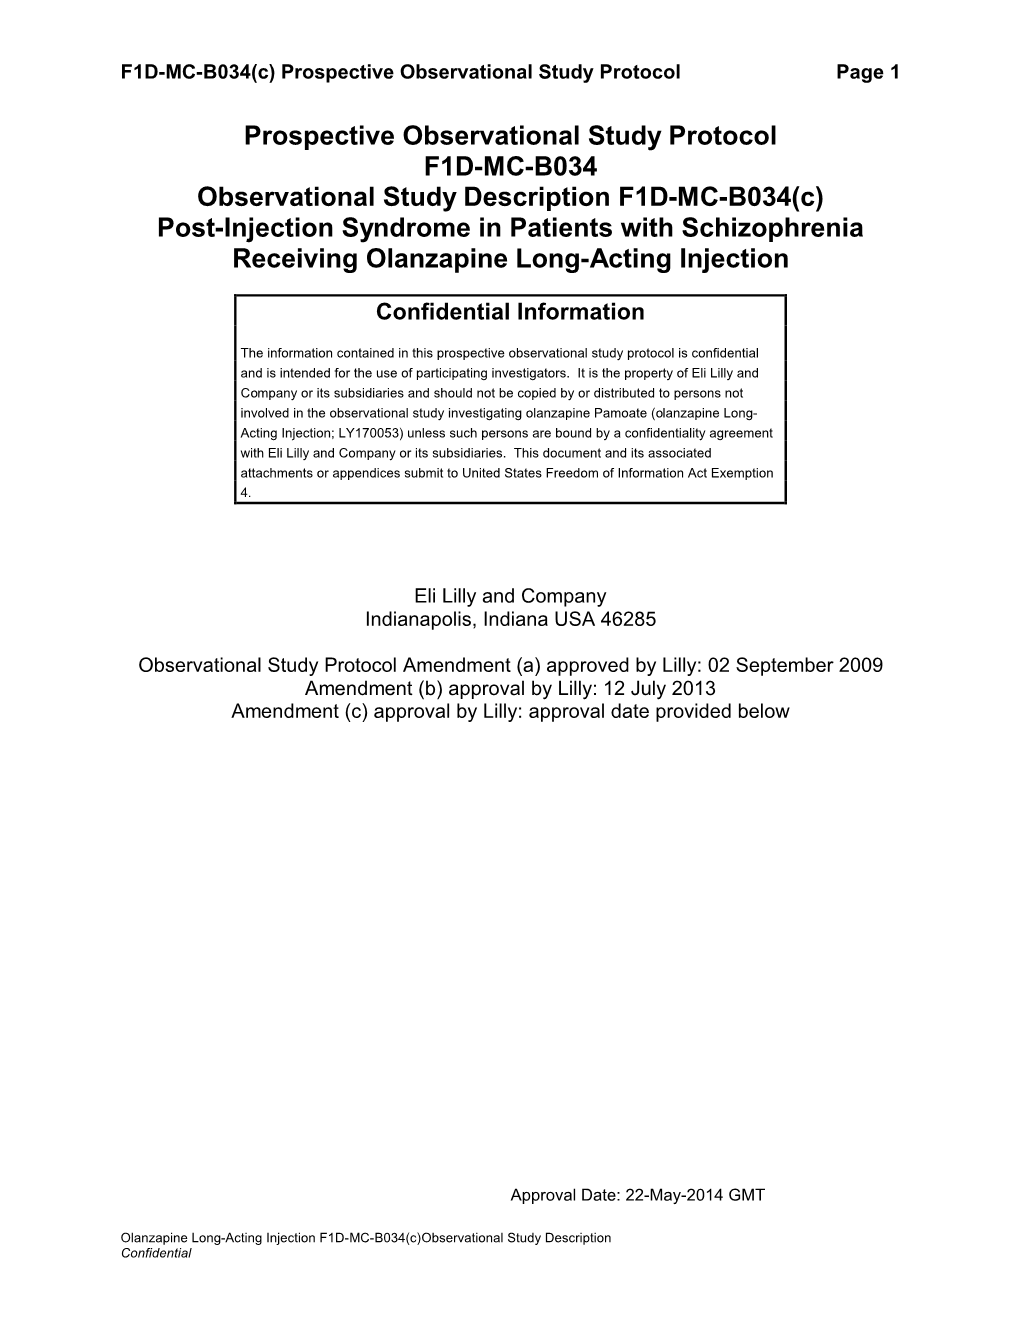 Prospective Observational Study Protocol F1D-MC-B034 Observational Study Description F1D-MC-B034(C)